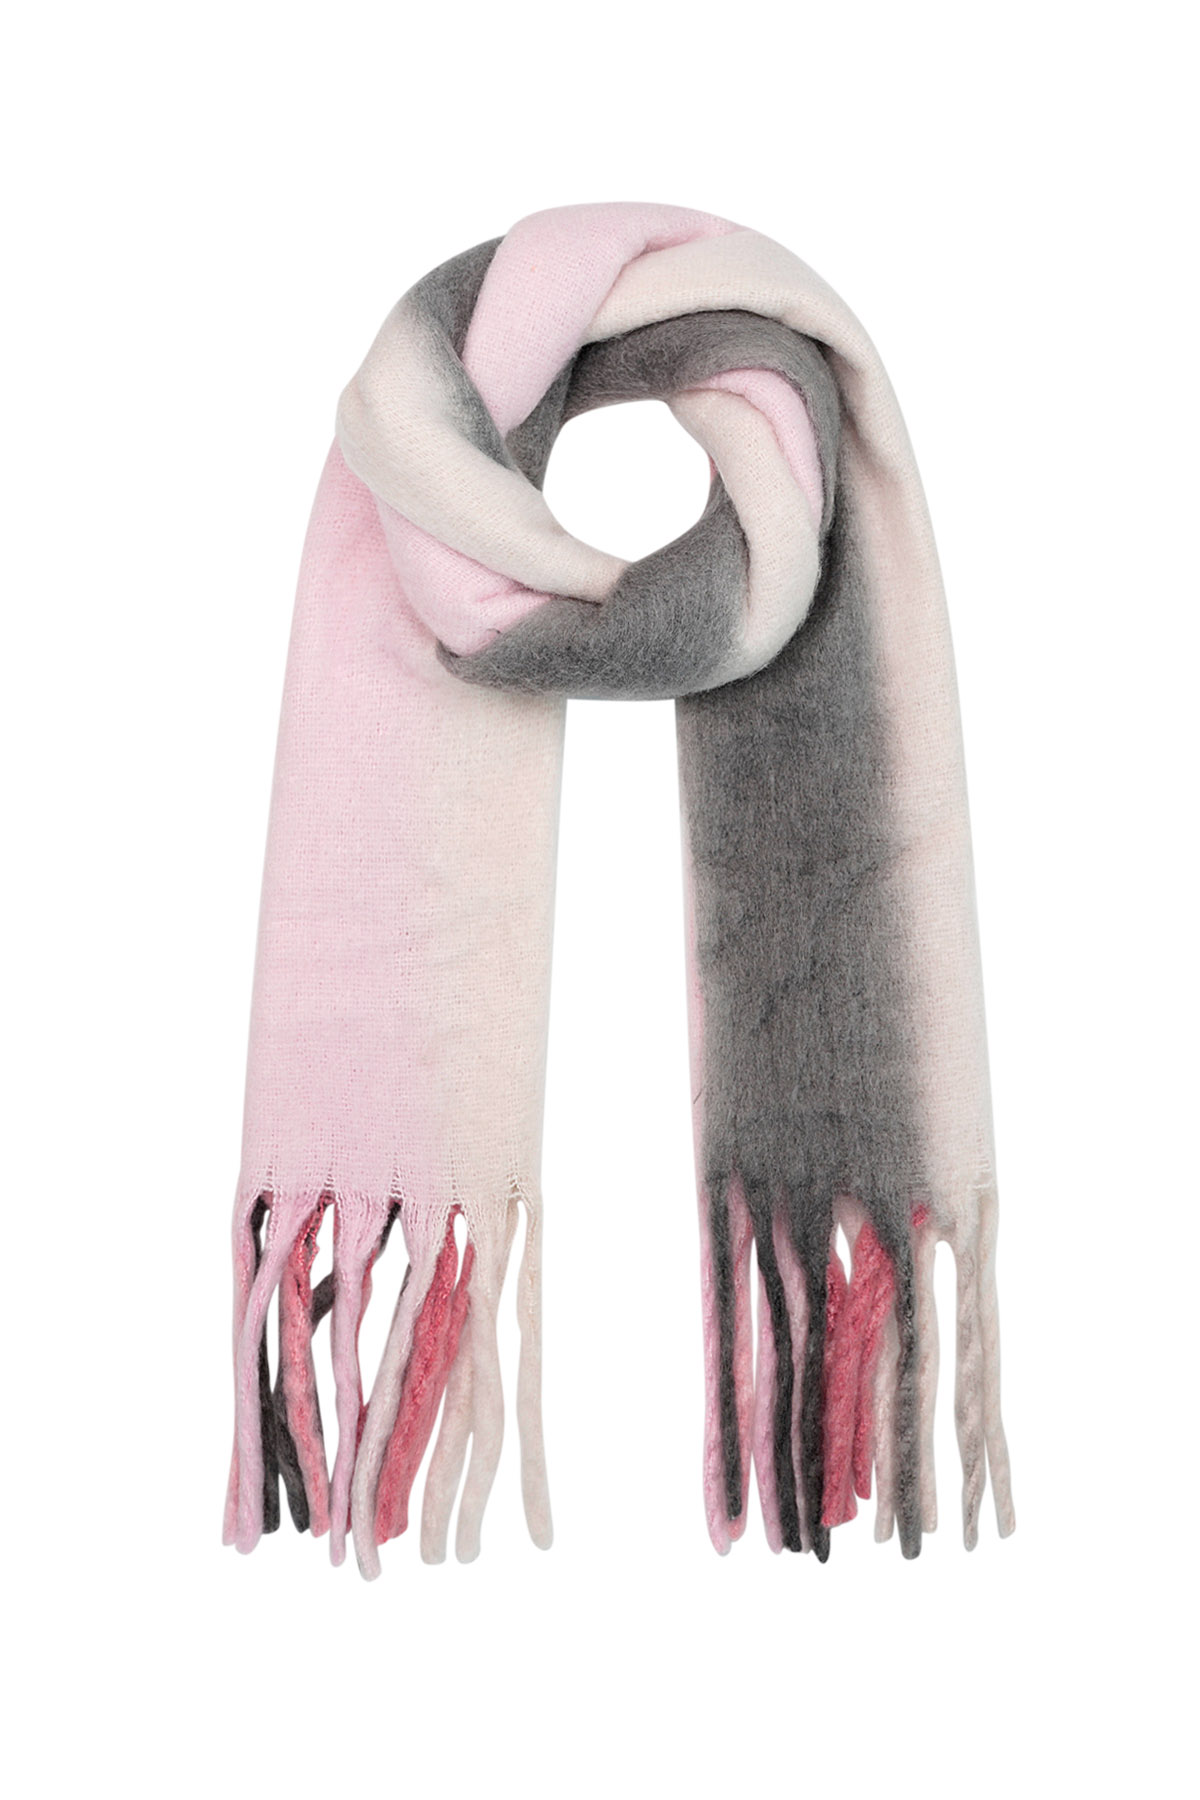 Echarpe d'hiver couleurs ombrées rose/gris Polyester 